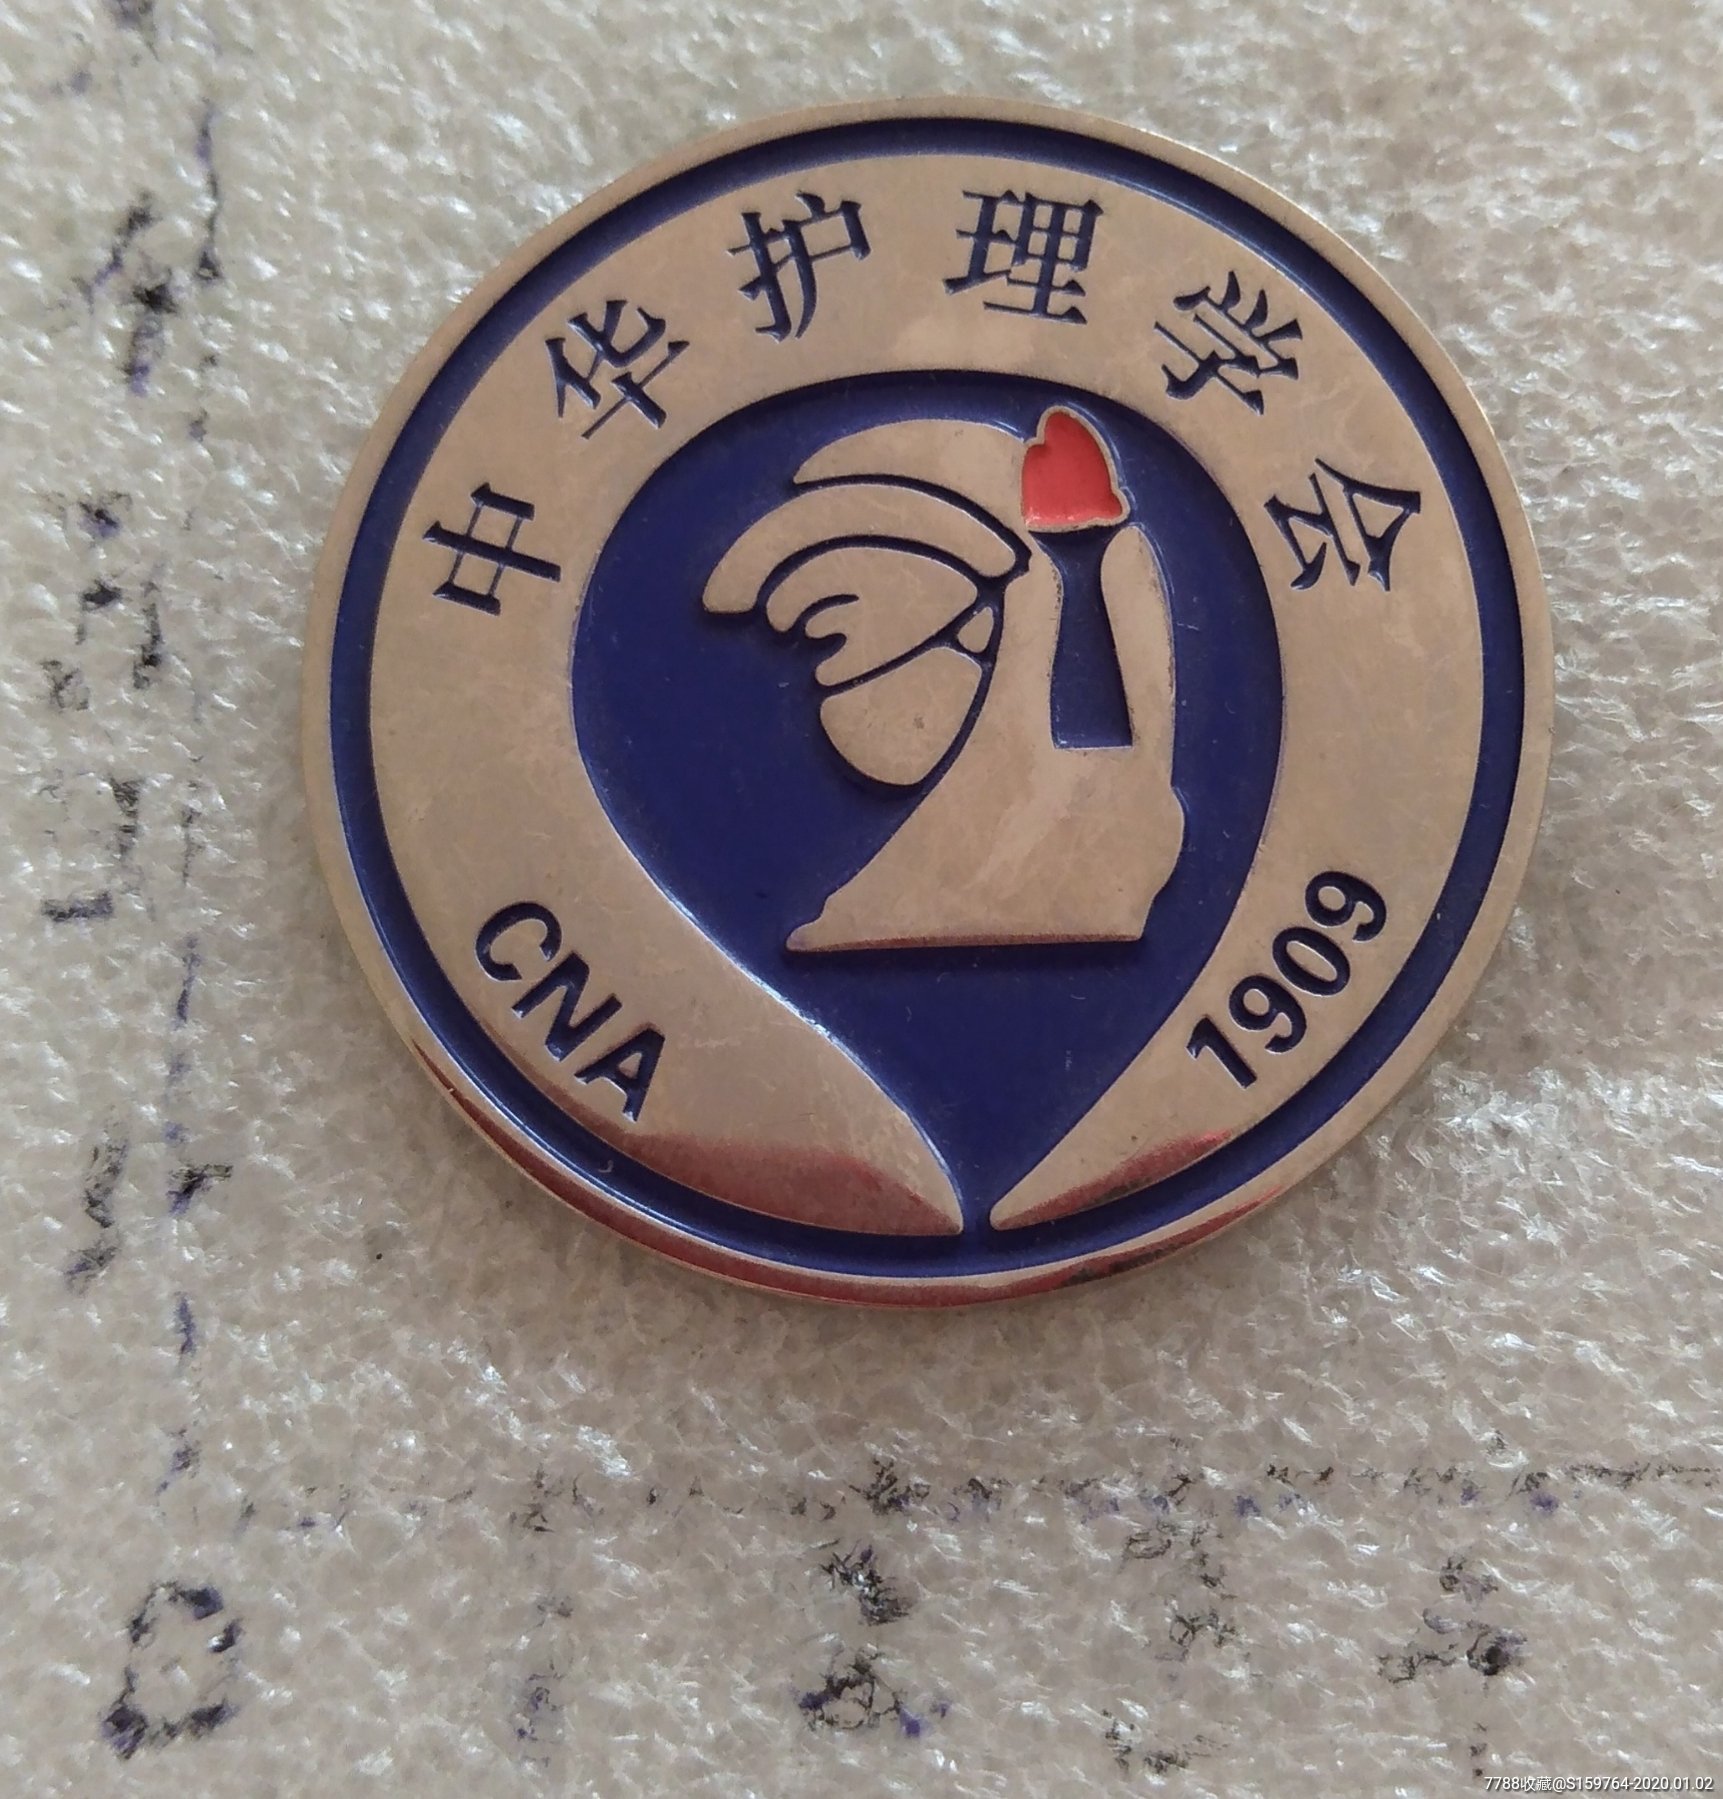 中华护理学会-工会/团体徽章-7788收藏__收藏热线